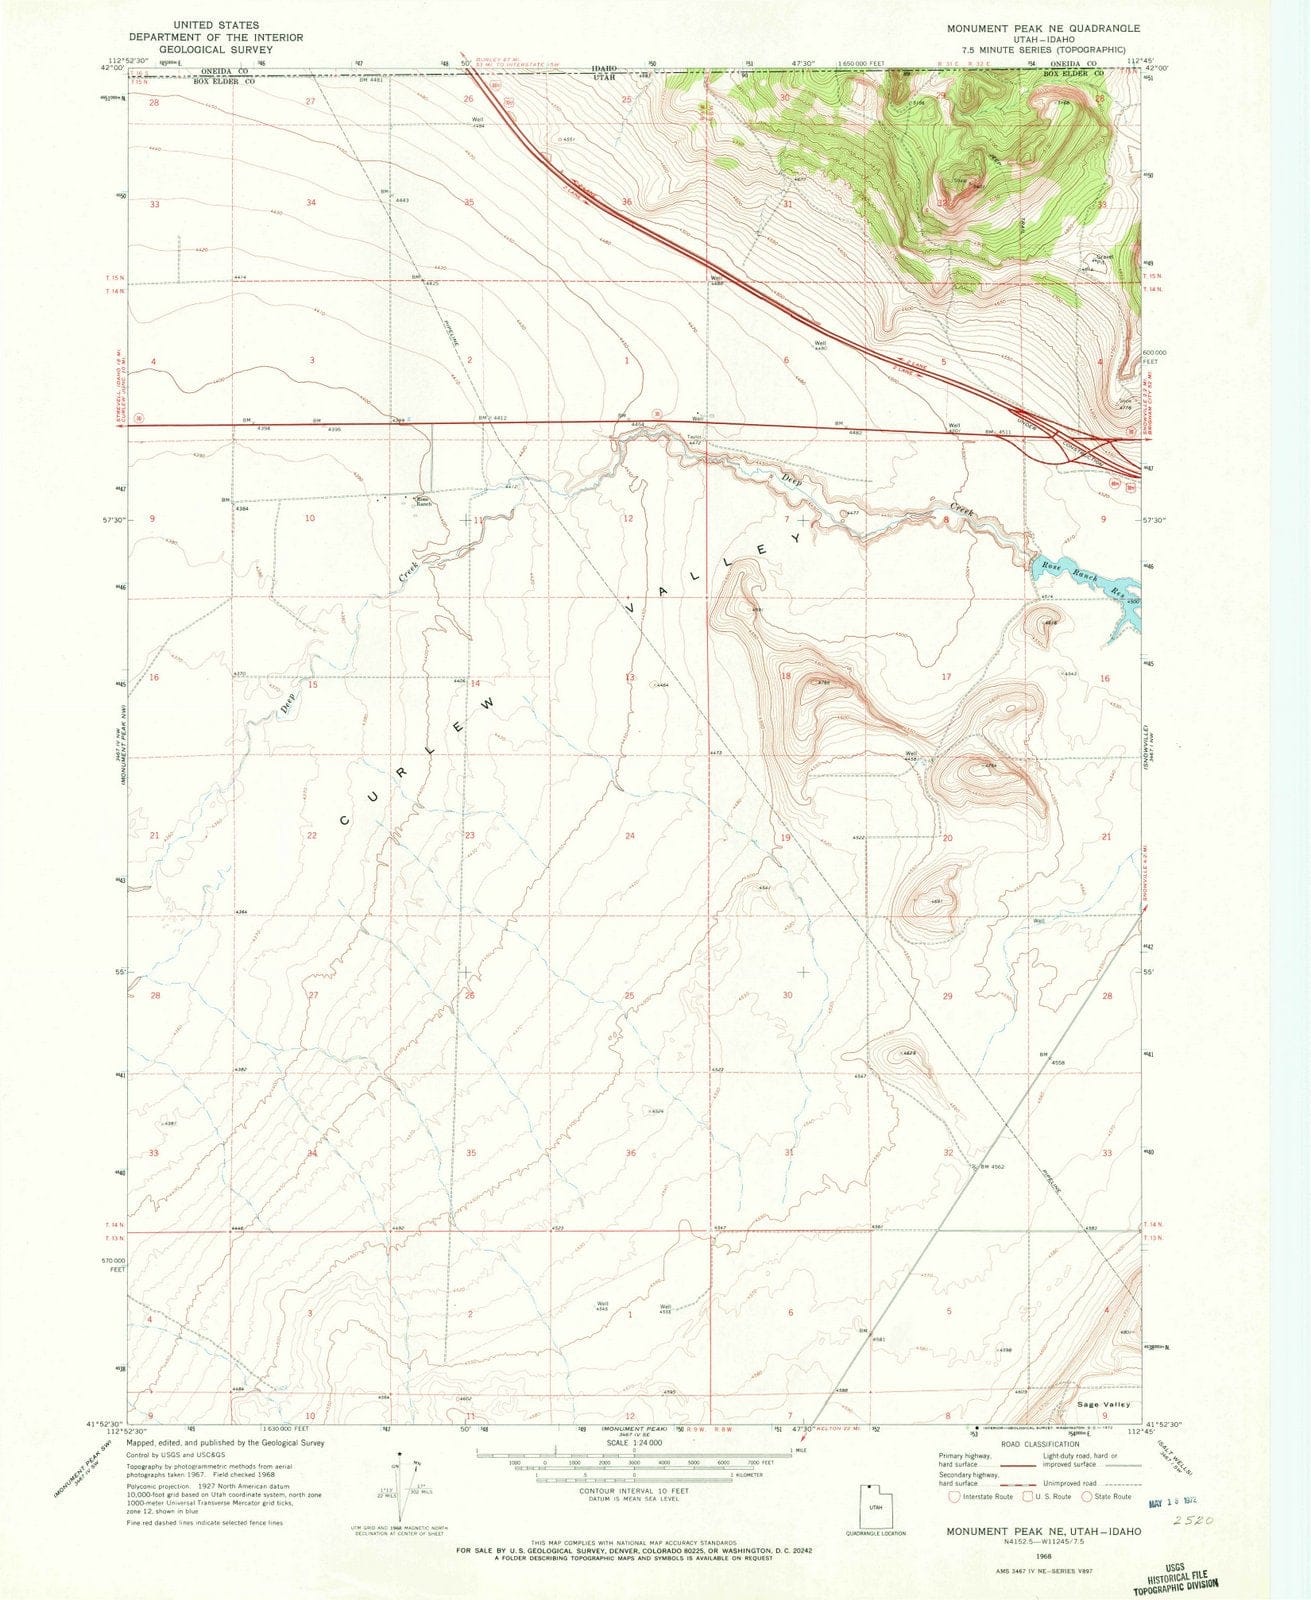 1968 Monument Peak, UT - Utah - USGS Topographic Map